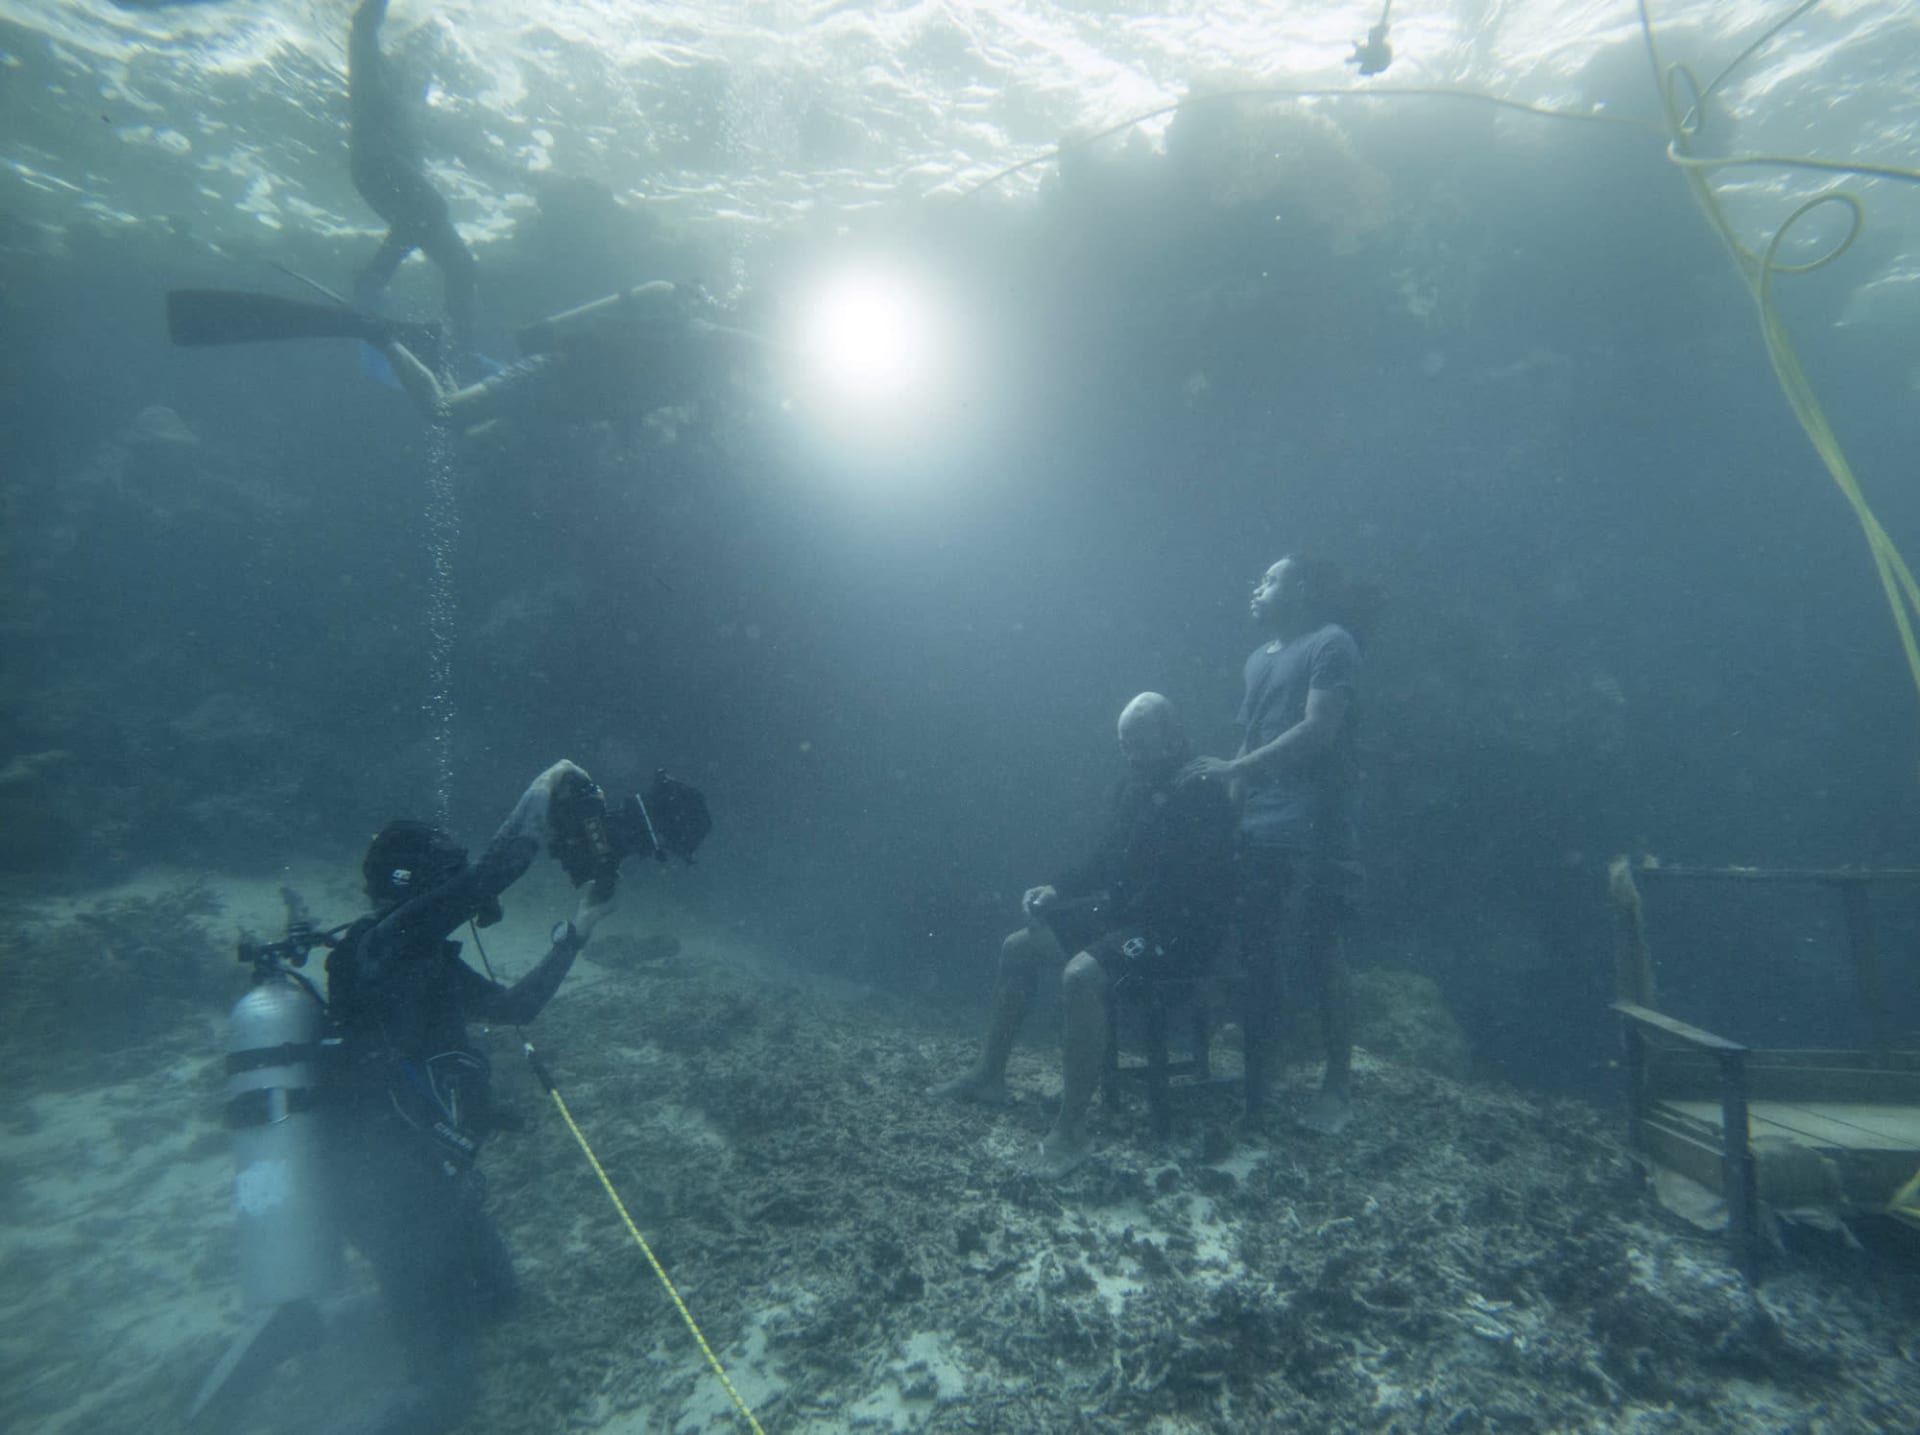 تحبس الأنفاس..هذه الصور المؤرقة تحت الماء تجسّد عواقب تغير المناخ بطريقة جديدة